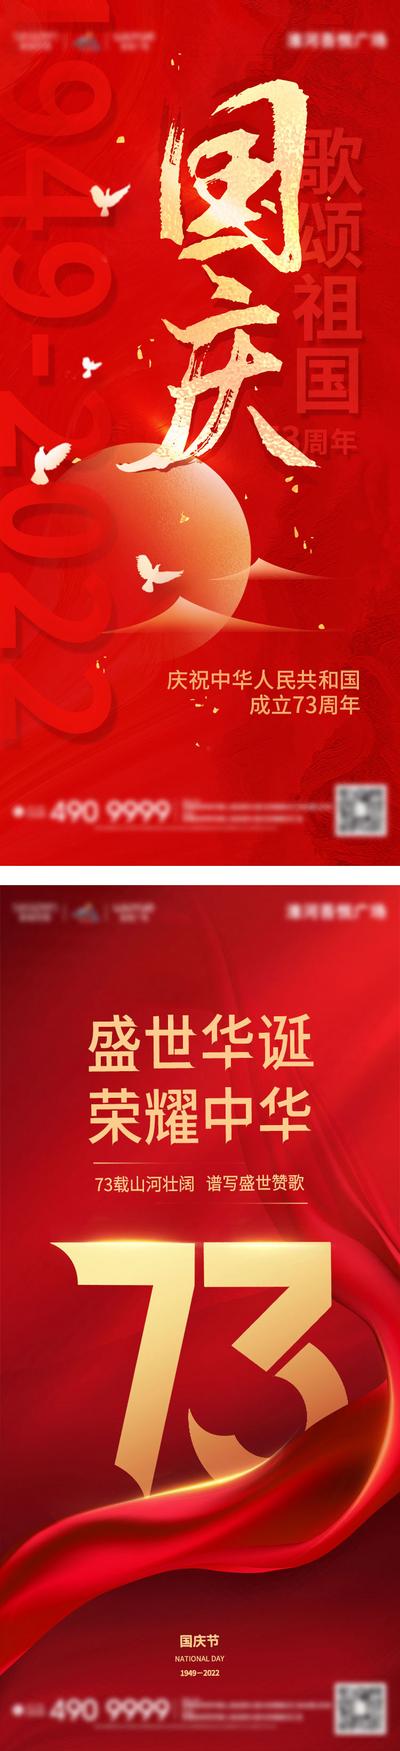 南门网 广告 海报 背景板 国庆 电商 地产 医美 活动 招聘 教育 节日